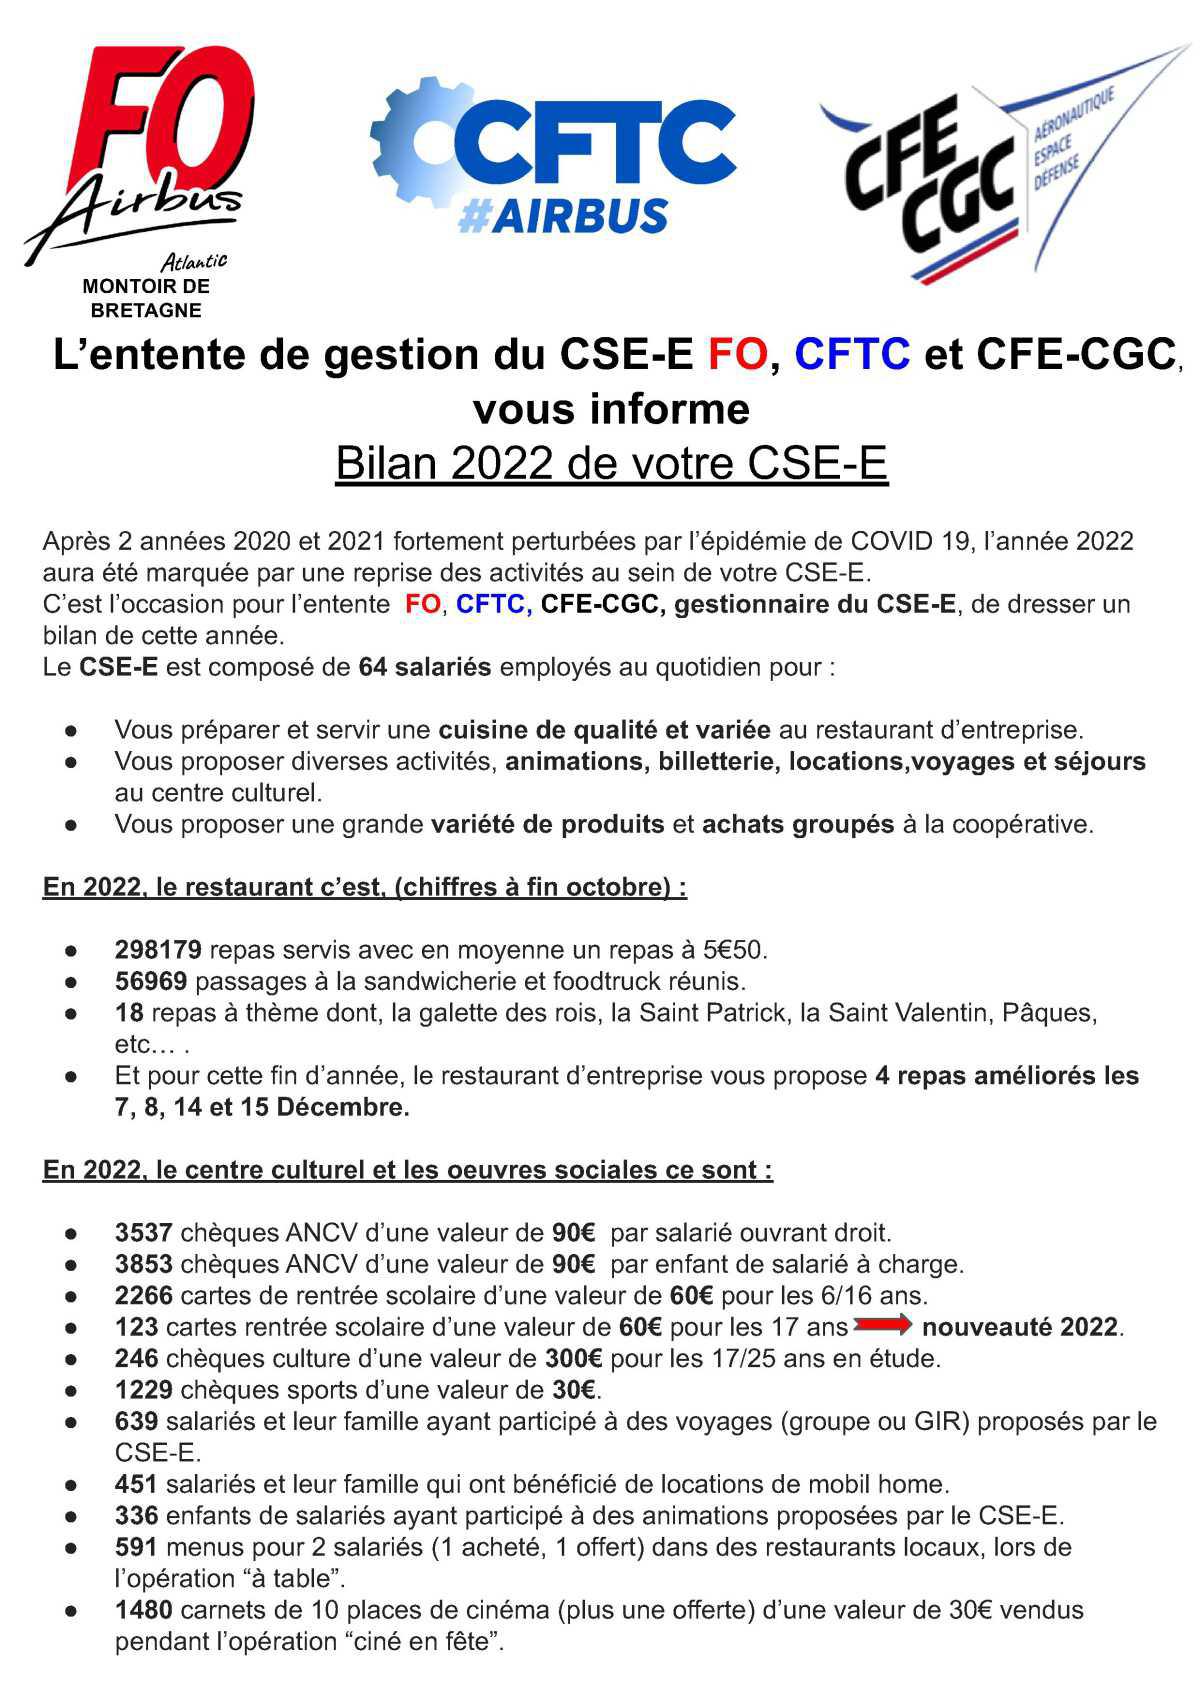 L’entente de gestion du CSE-E FO, CFTC et CFE-CGC vous informe : Bilan 2022 de votre CSE-E